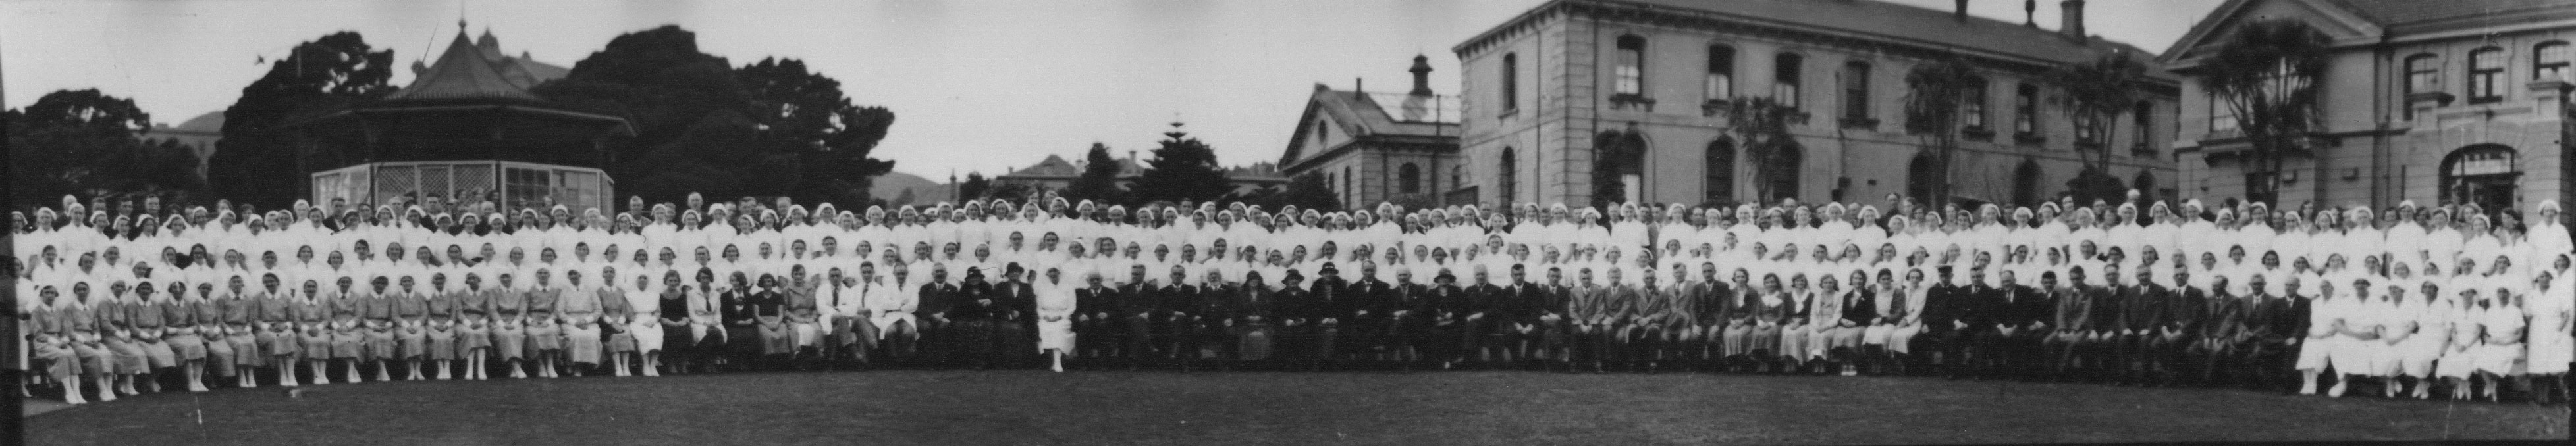 1930s staff